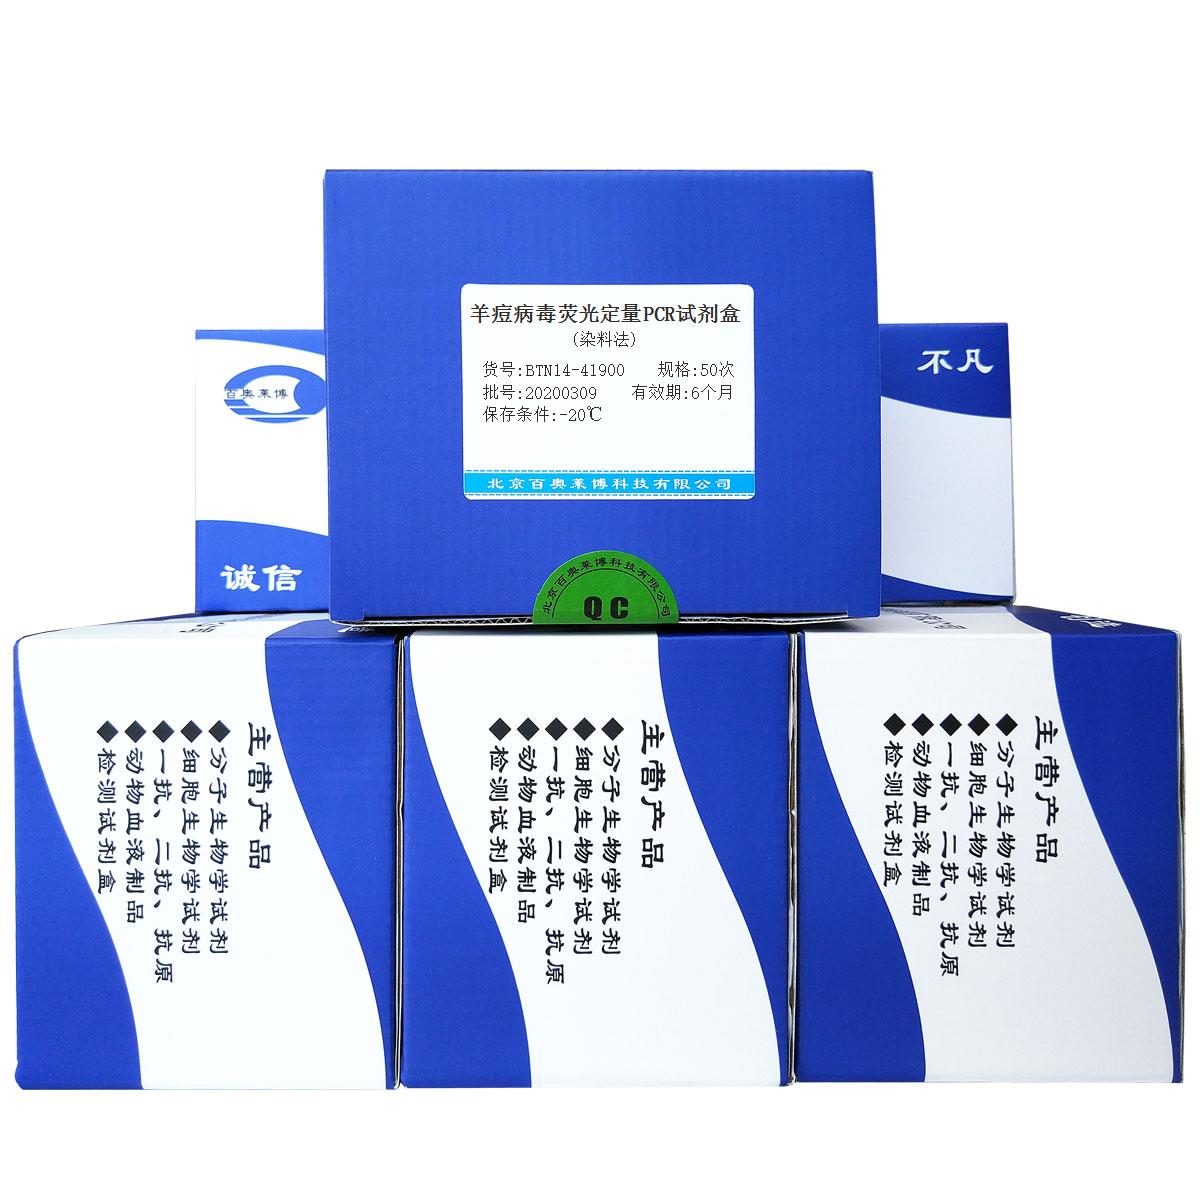 羊痘病毒荧光定量PCR试剂盒(染料法)优惠促销